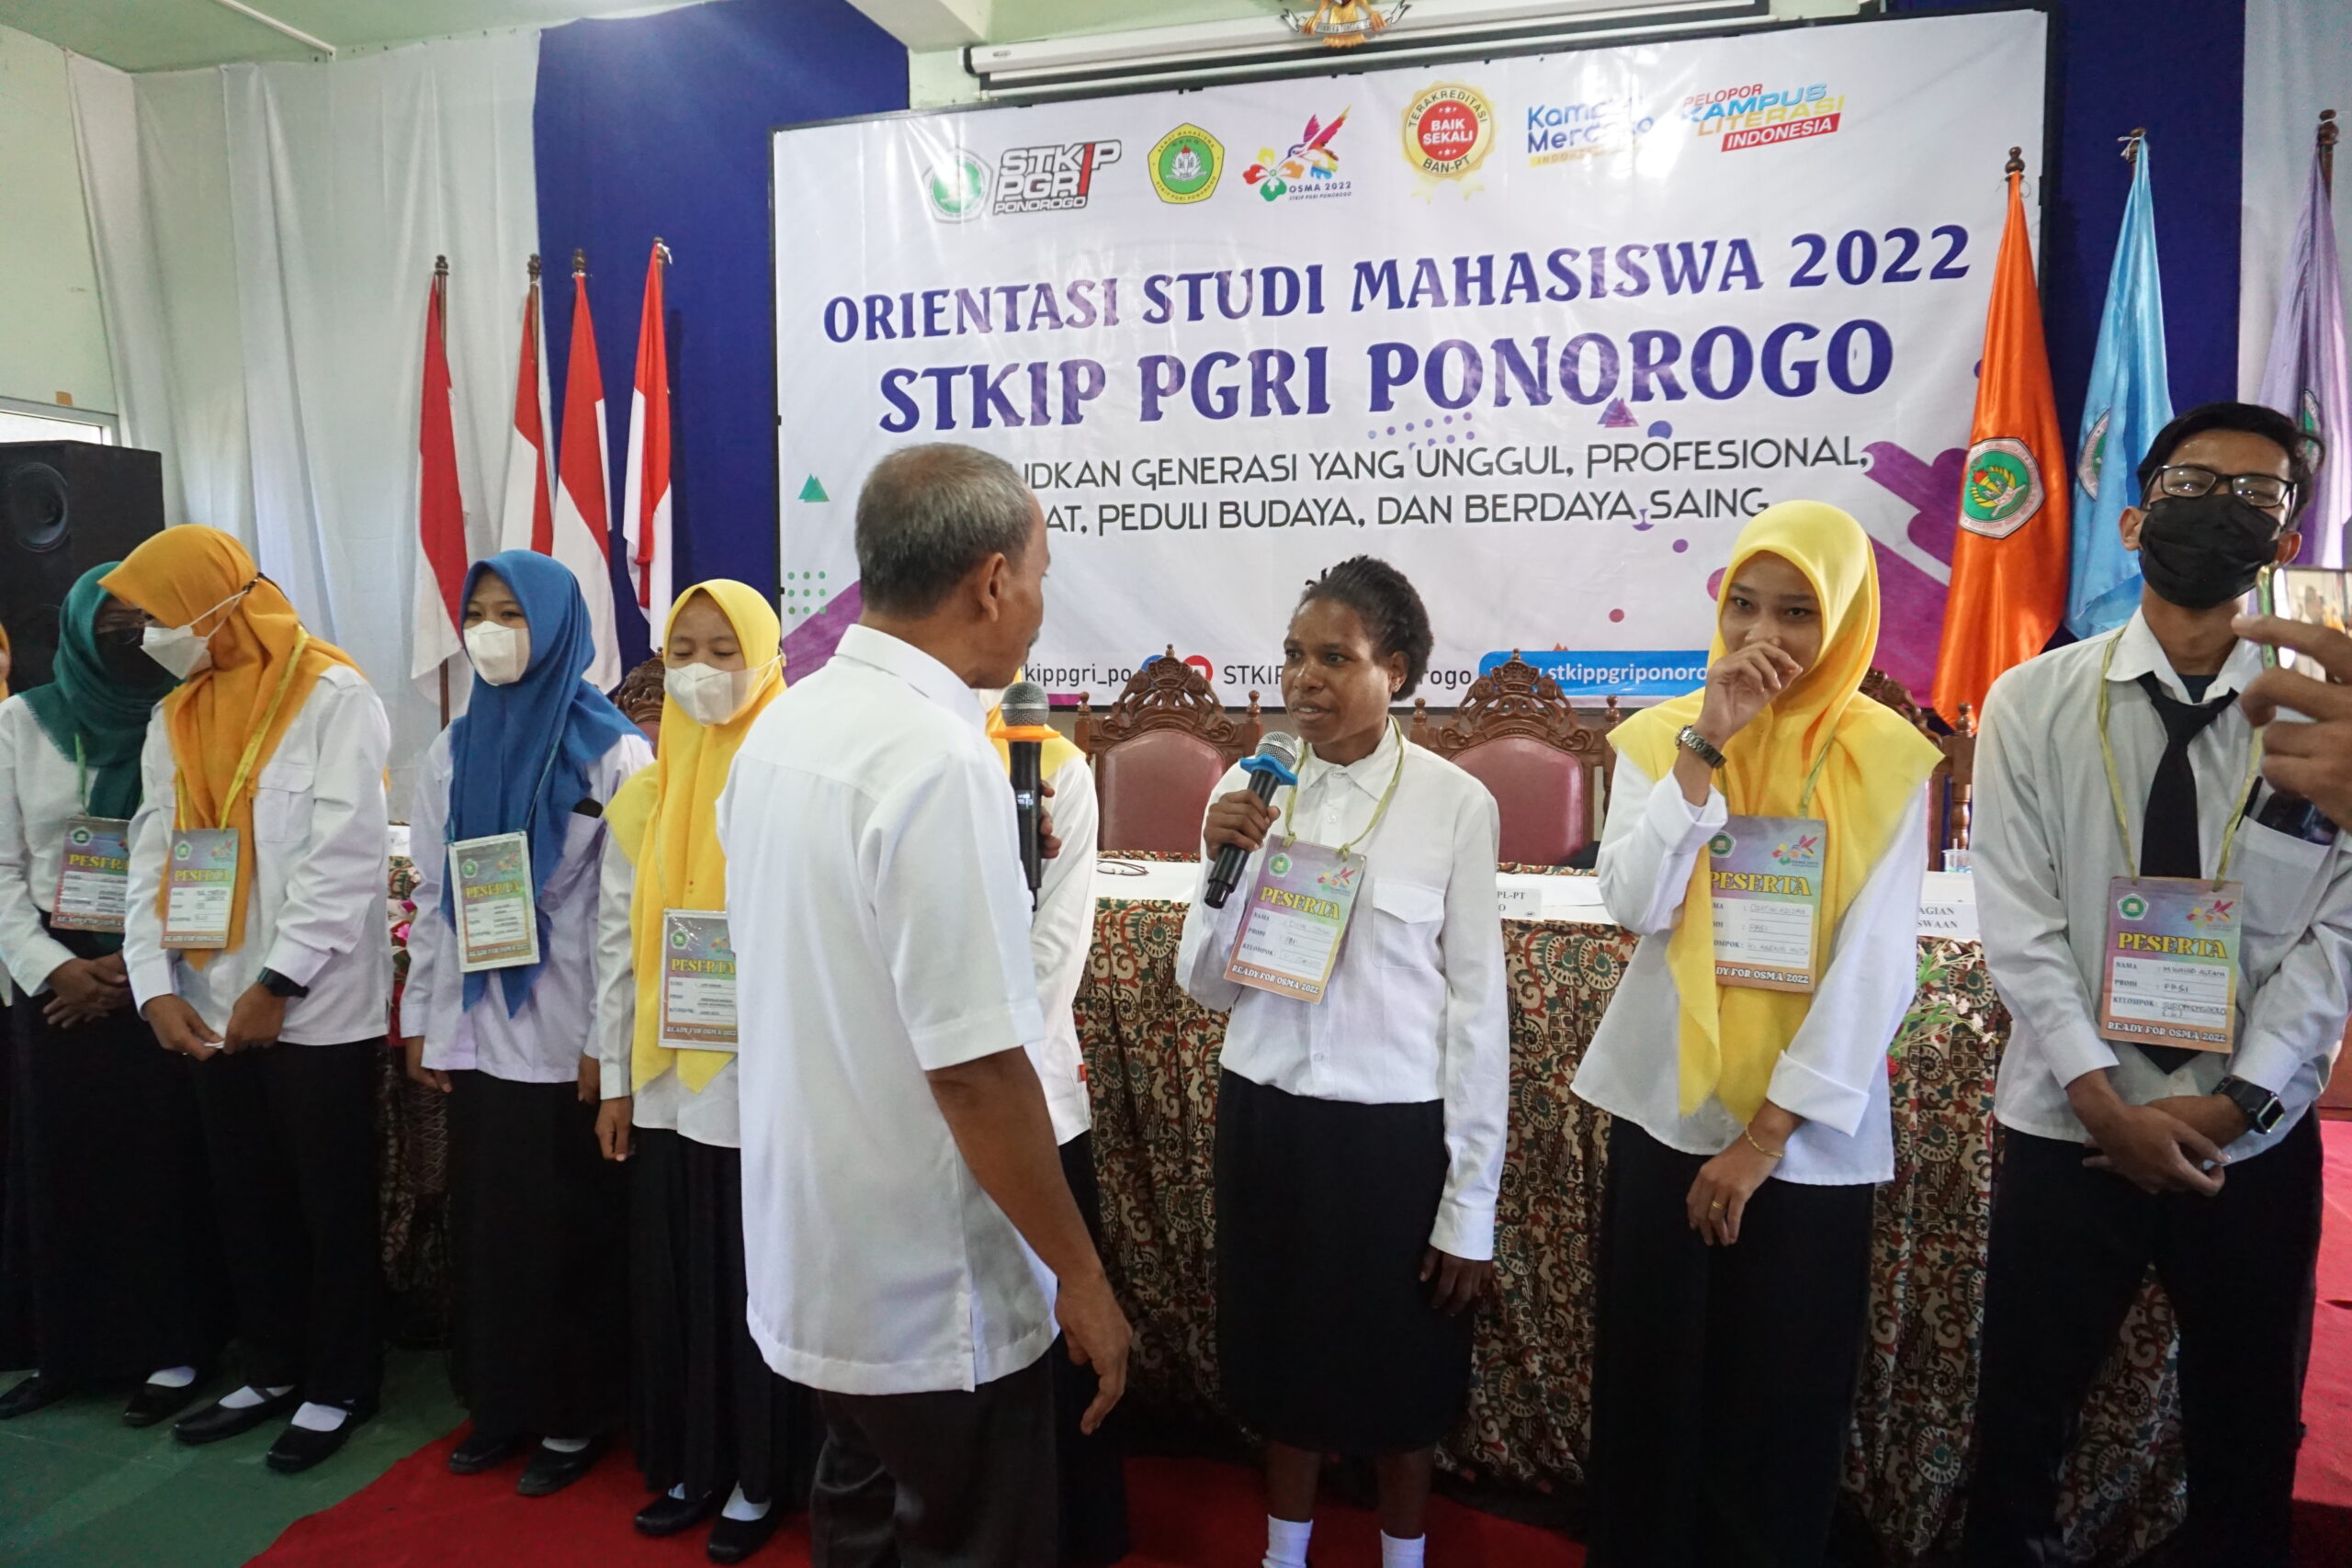 Dari Sumatra Hingga Papua, Mahasiswa Baru STKIP PGRI Ponorogo Kumpul